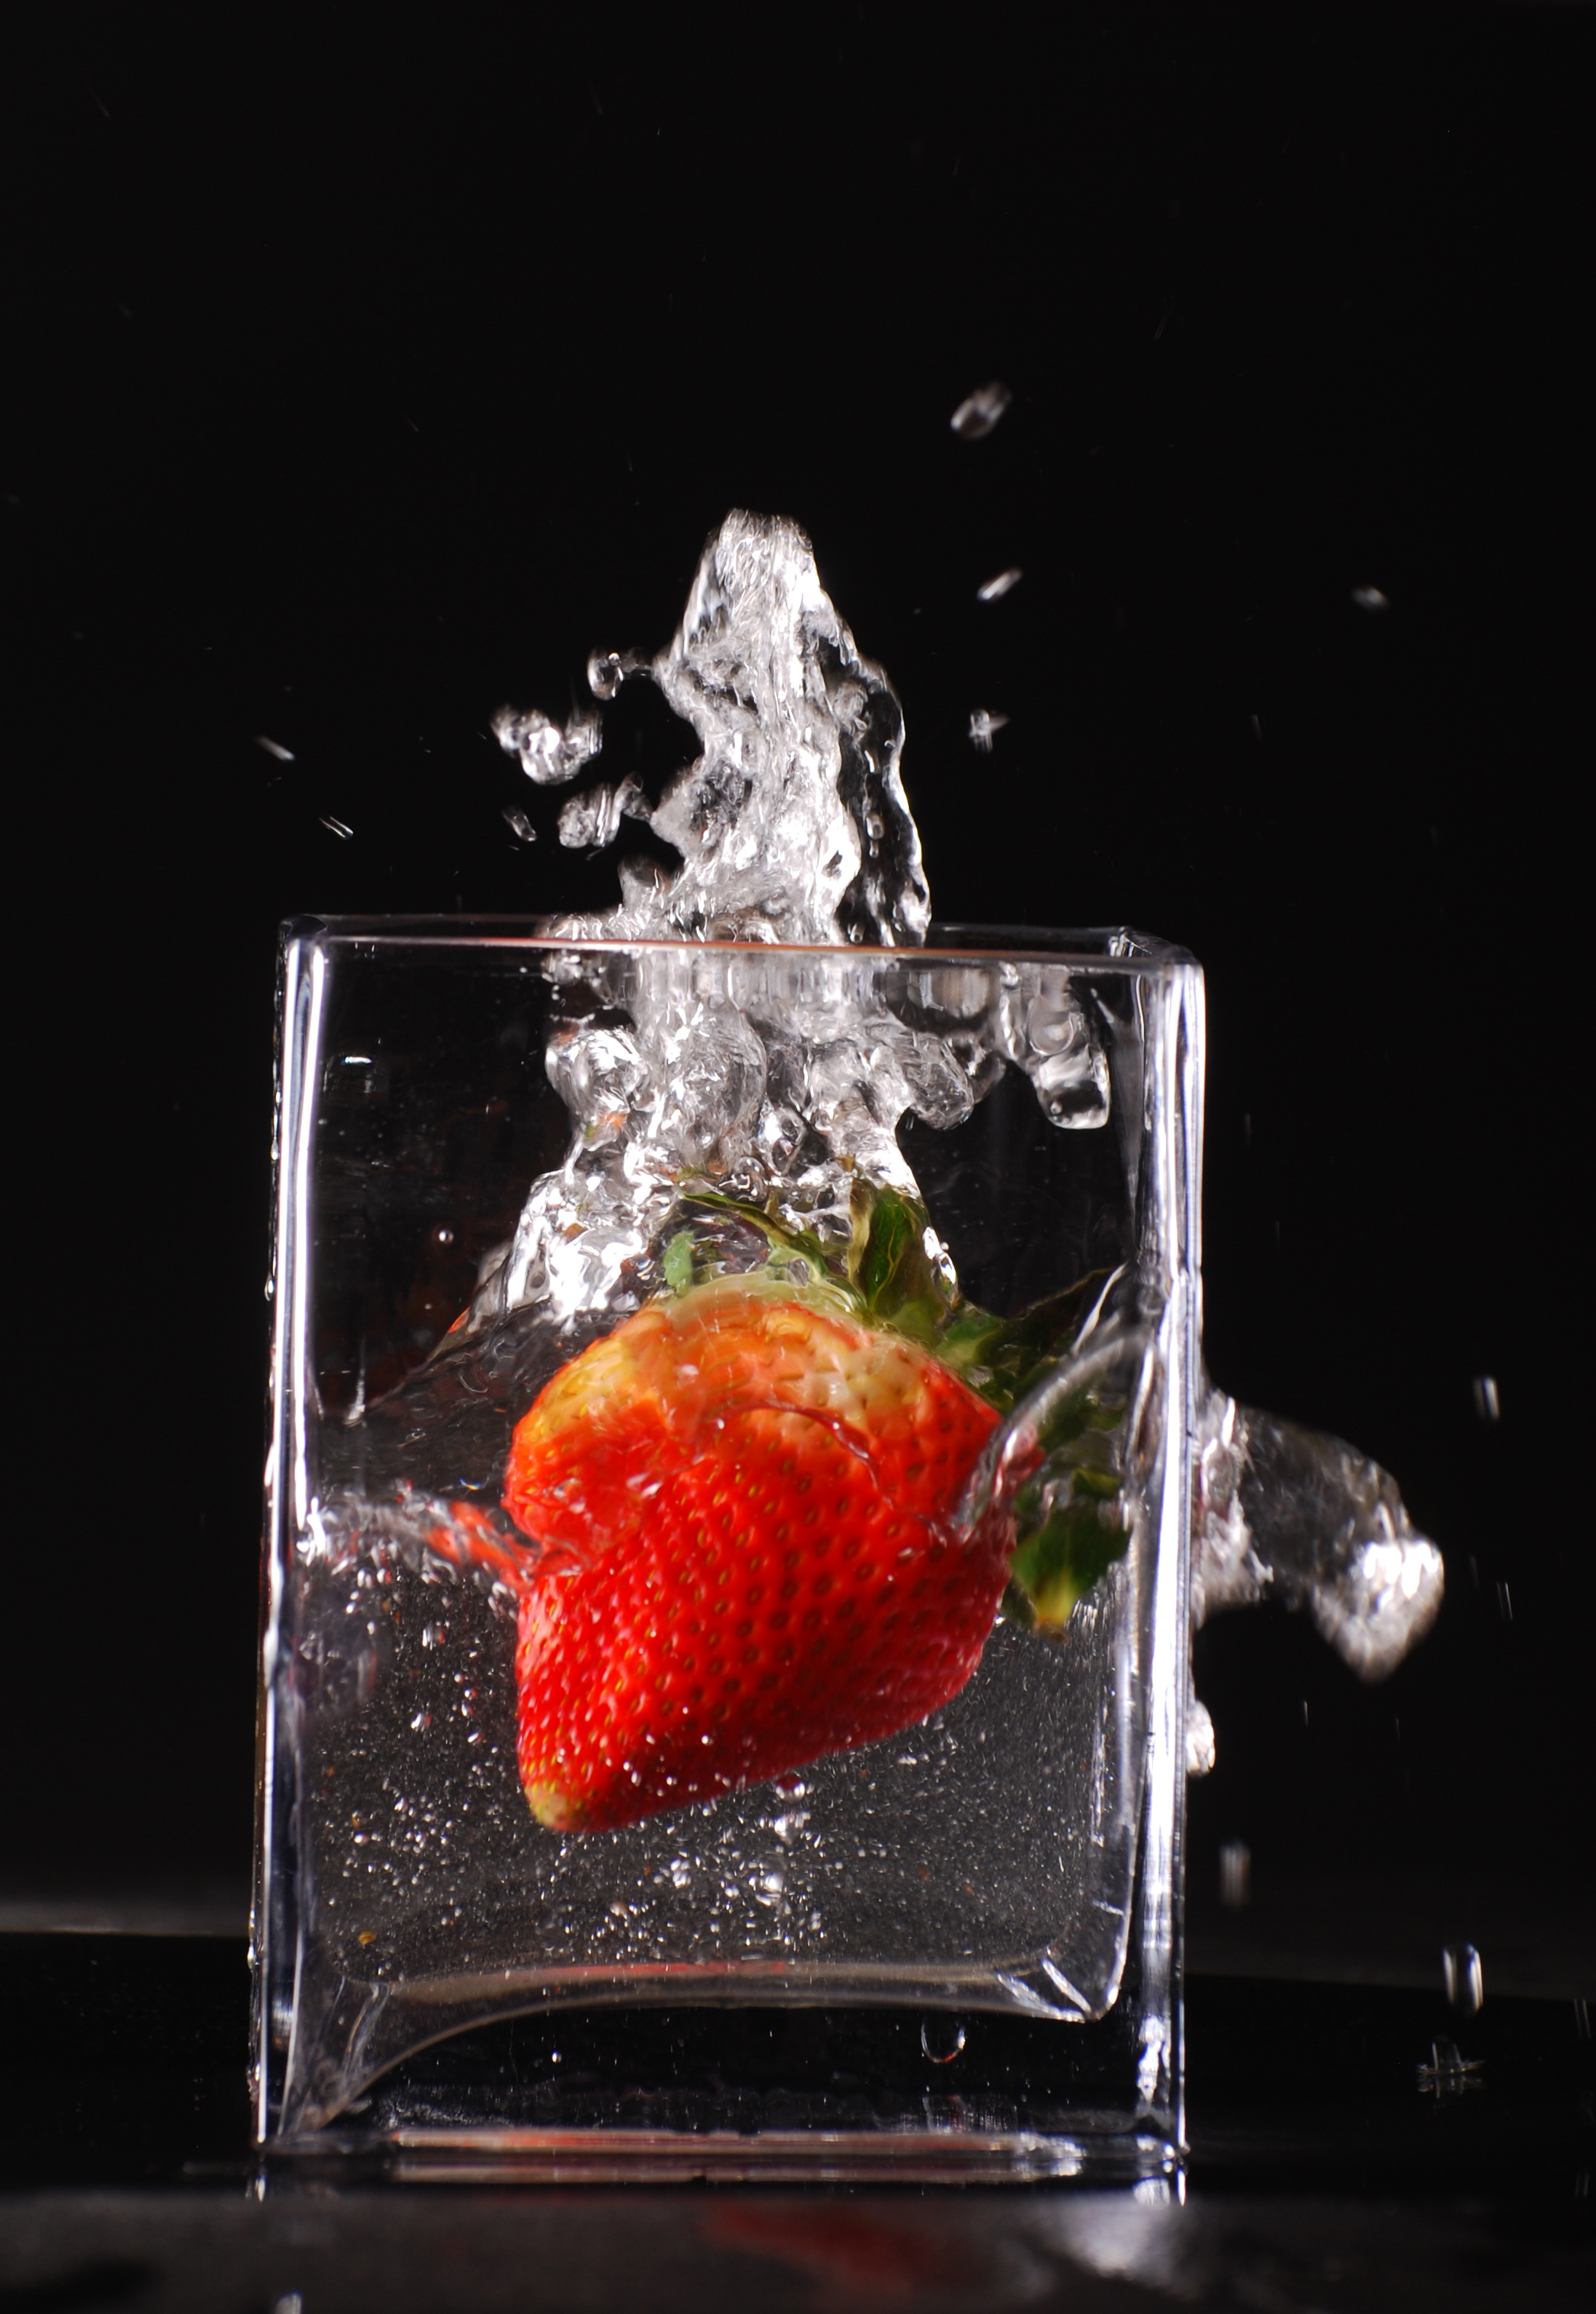 Splashing strawberry photo